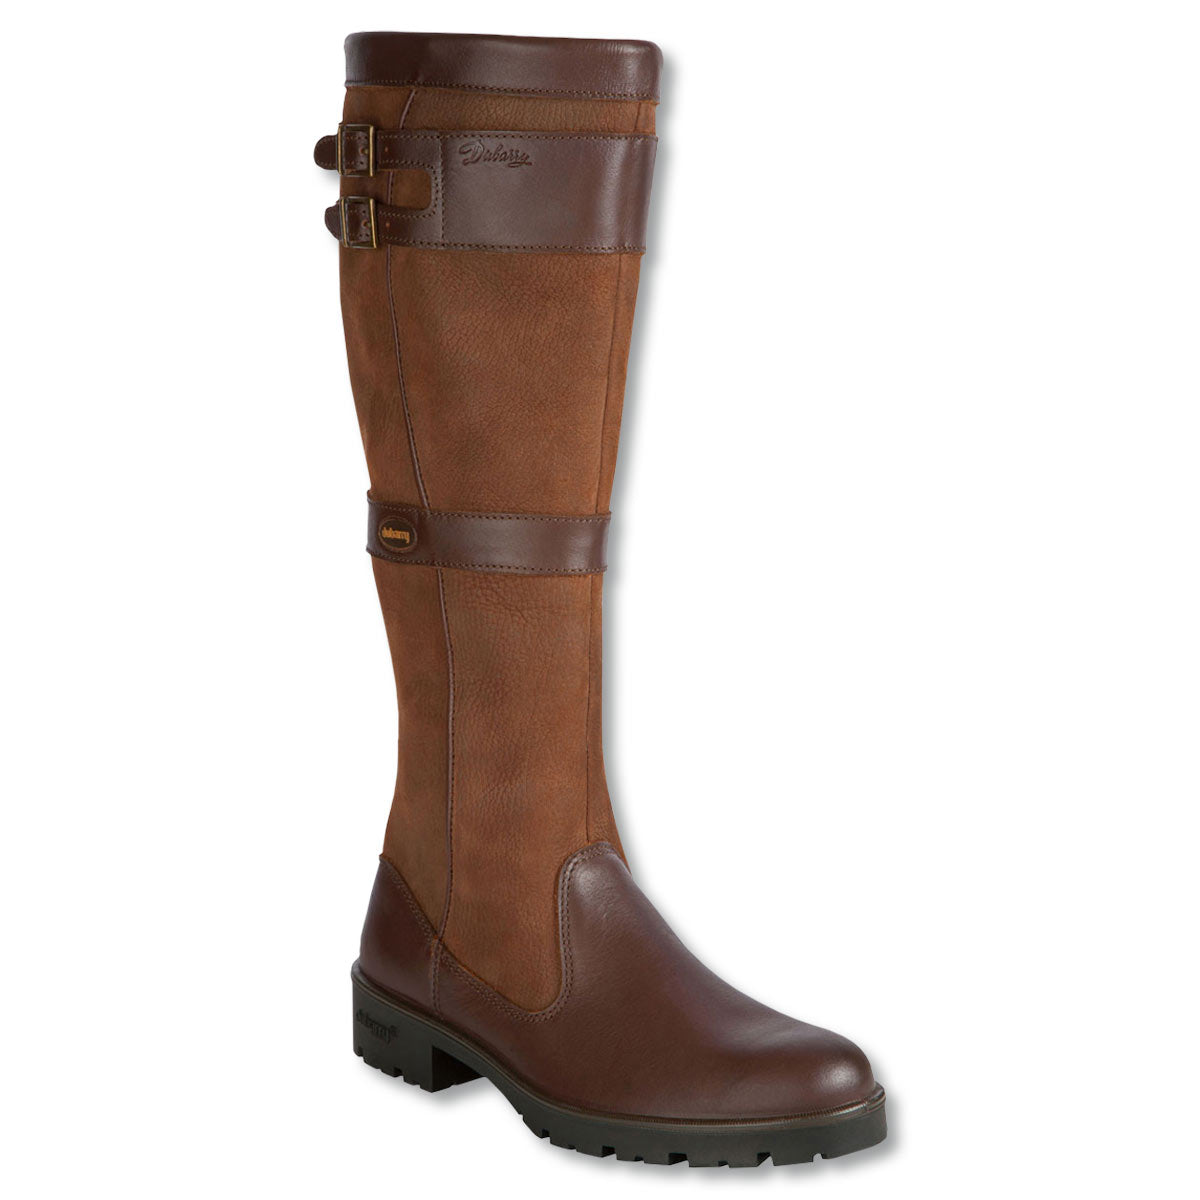 Dubarry Longford Waterproof Boot-FOOTWEAR-WALNUT-US 9-9.5-Kevin's Fine Outdoor Gear & Apparel